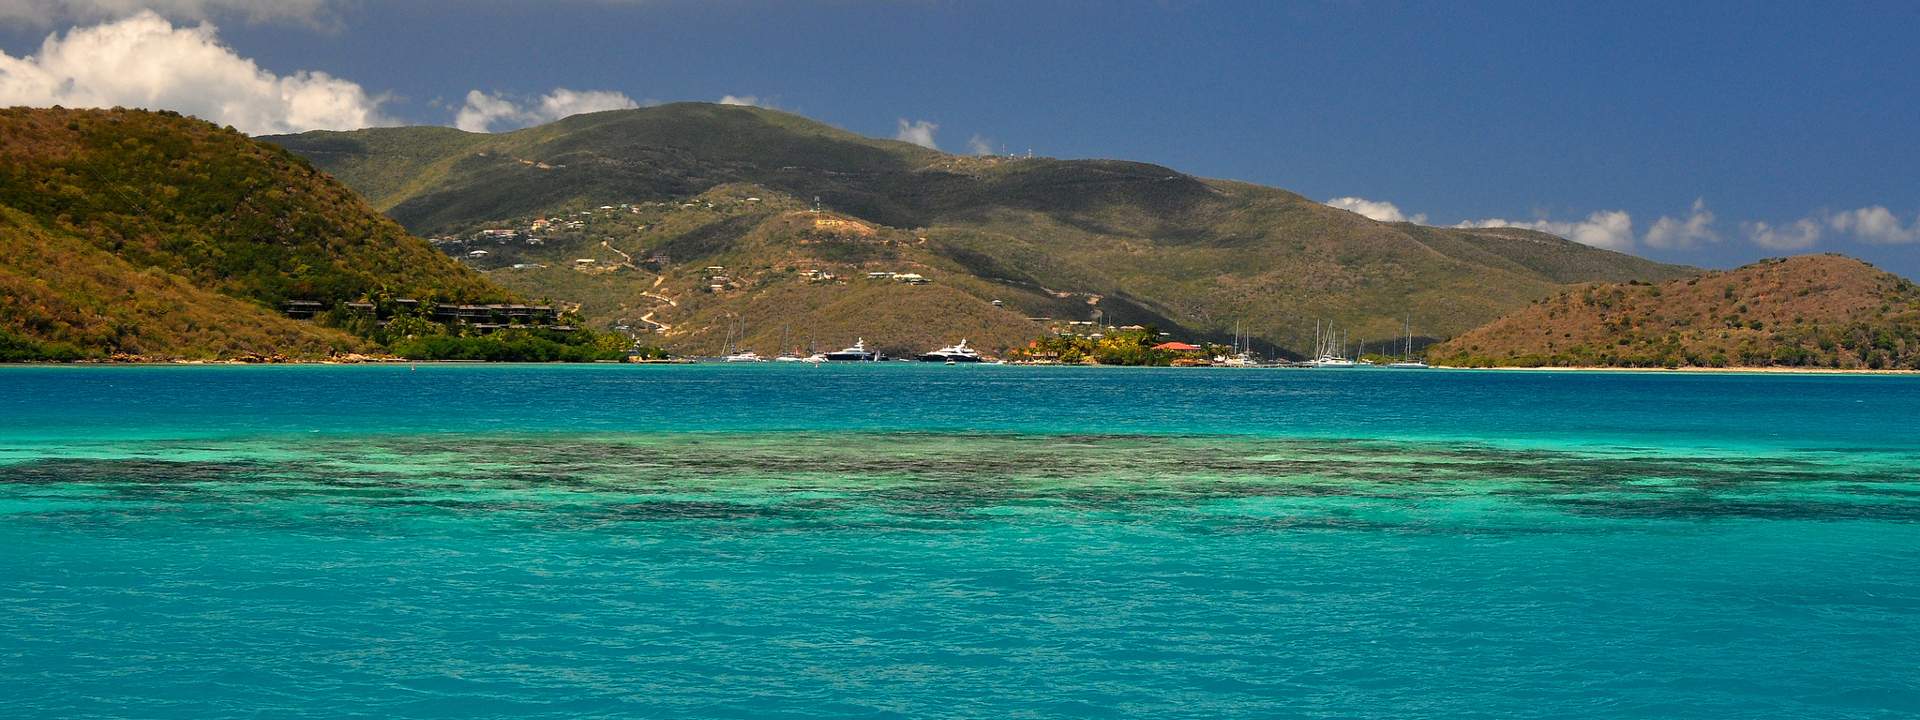 Percorrete l'arcipelago delle Isole Vergini in un lussuoso catamarano